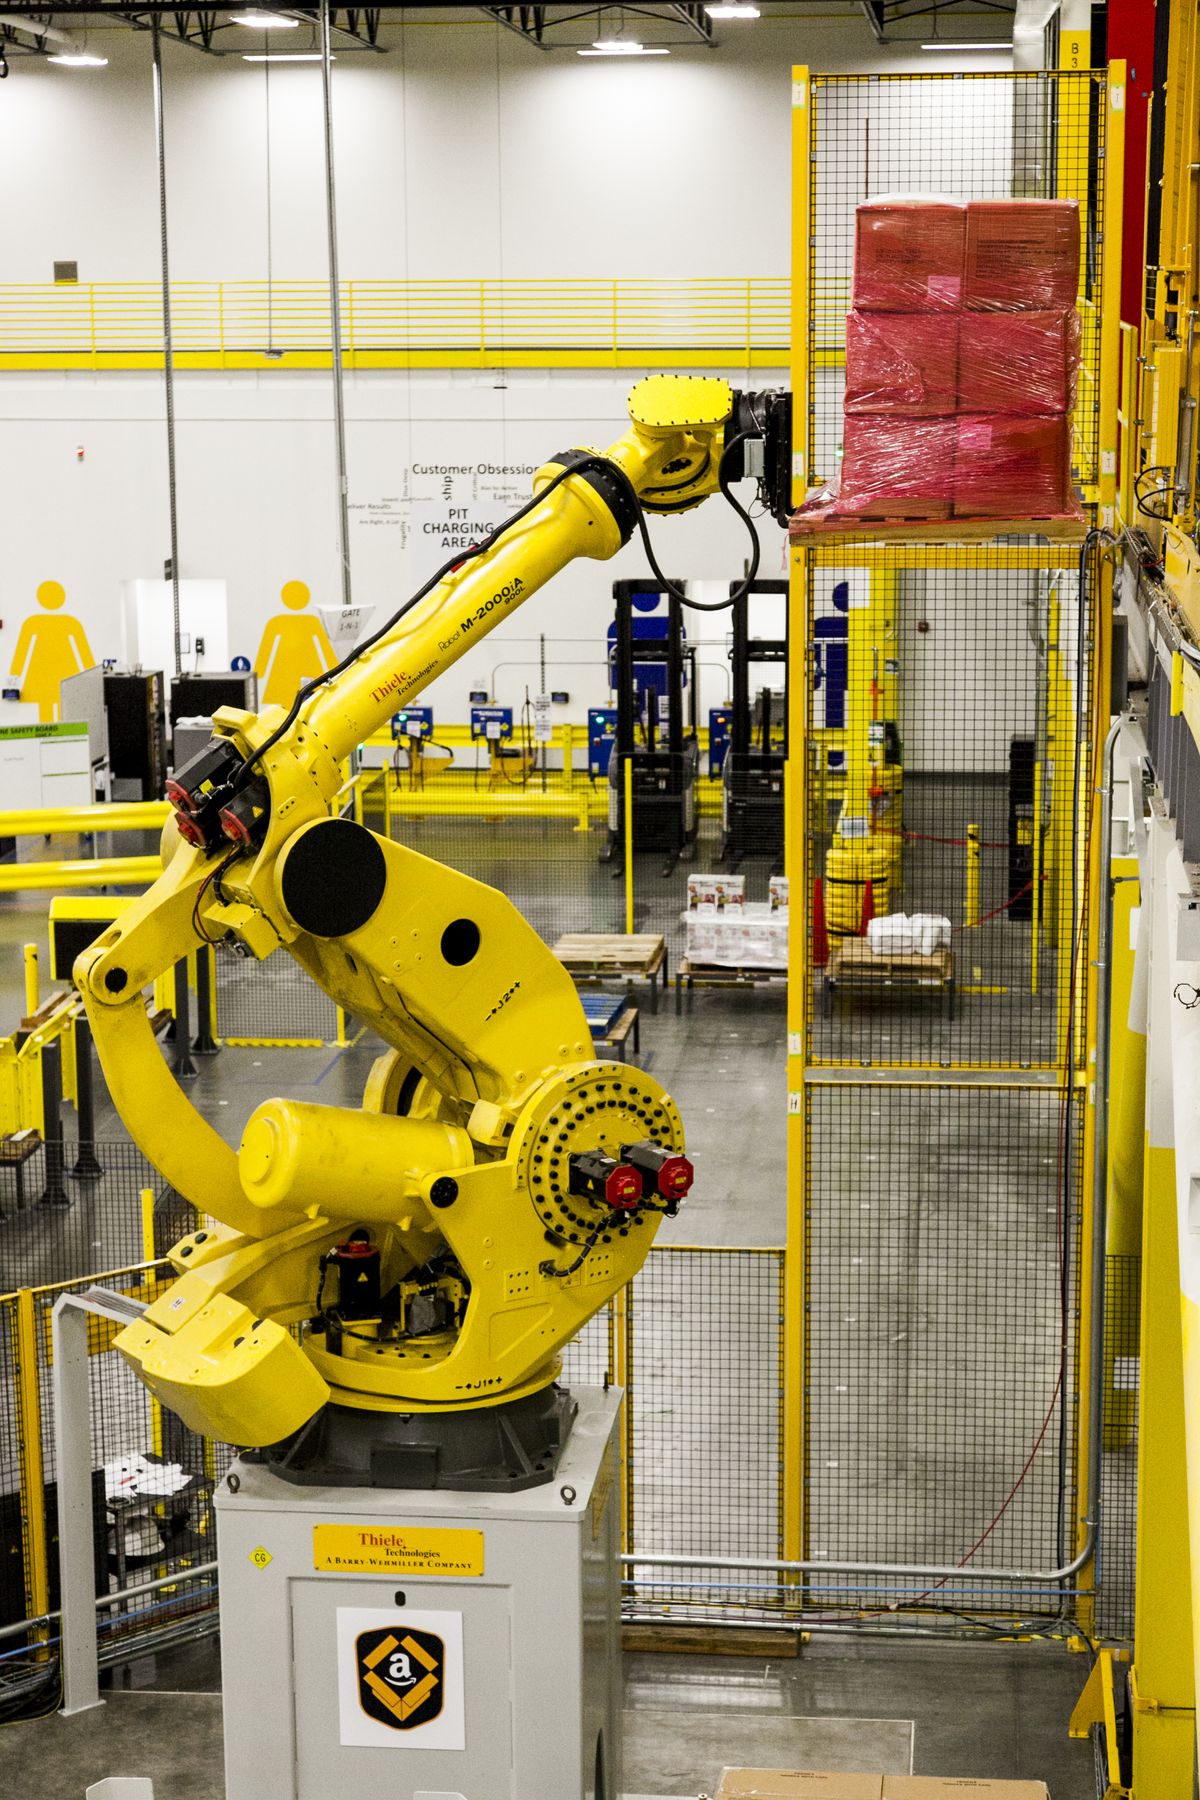 Amazon’s New Sparrow Robot Set to Take Up Warehouse Tasks